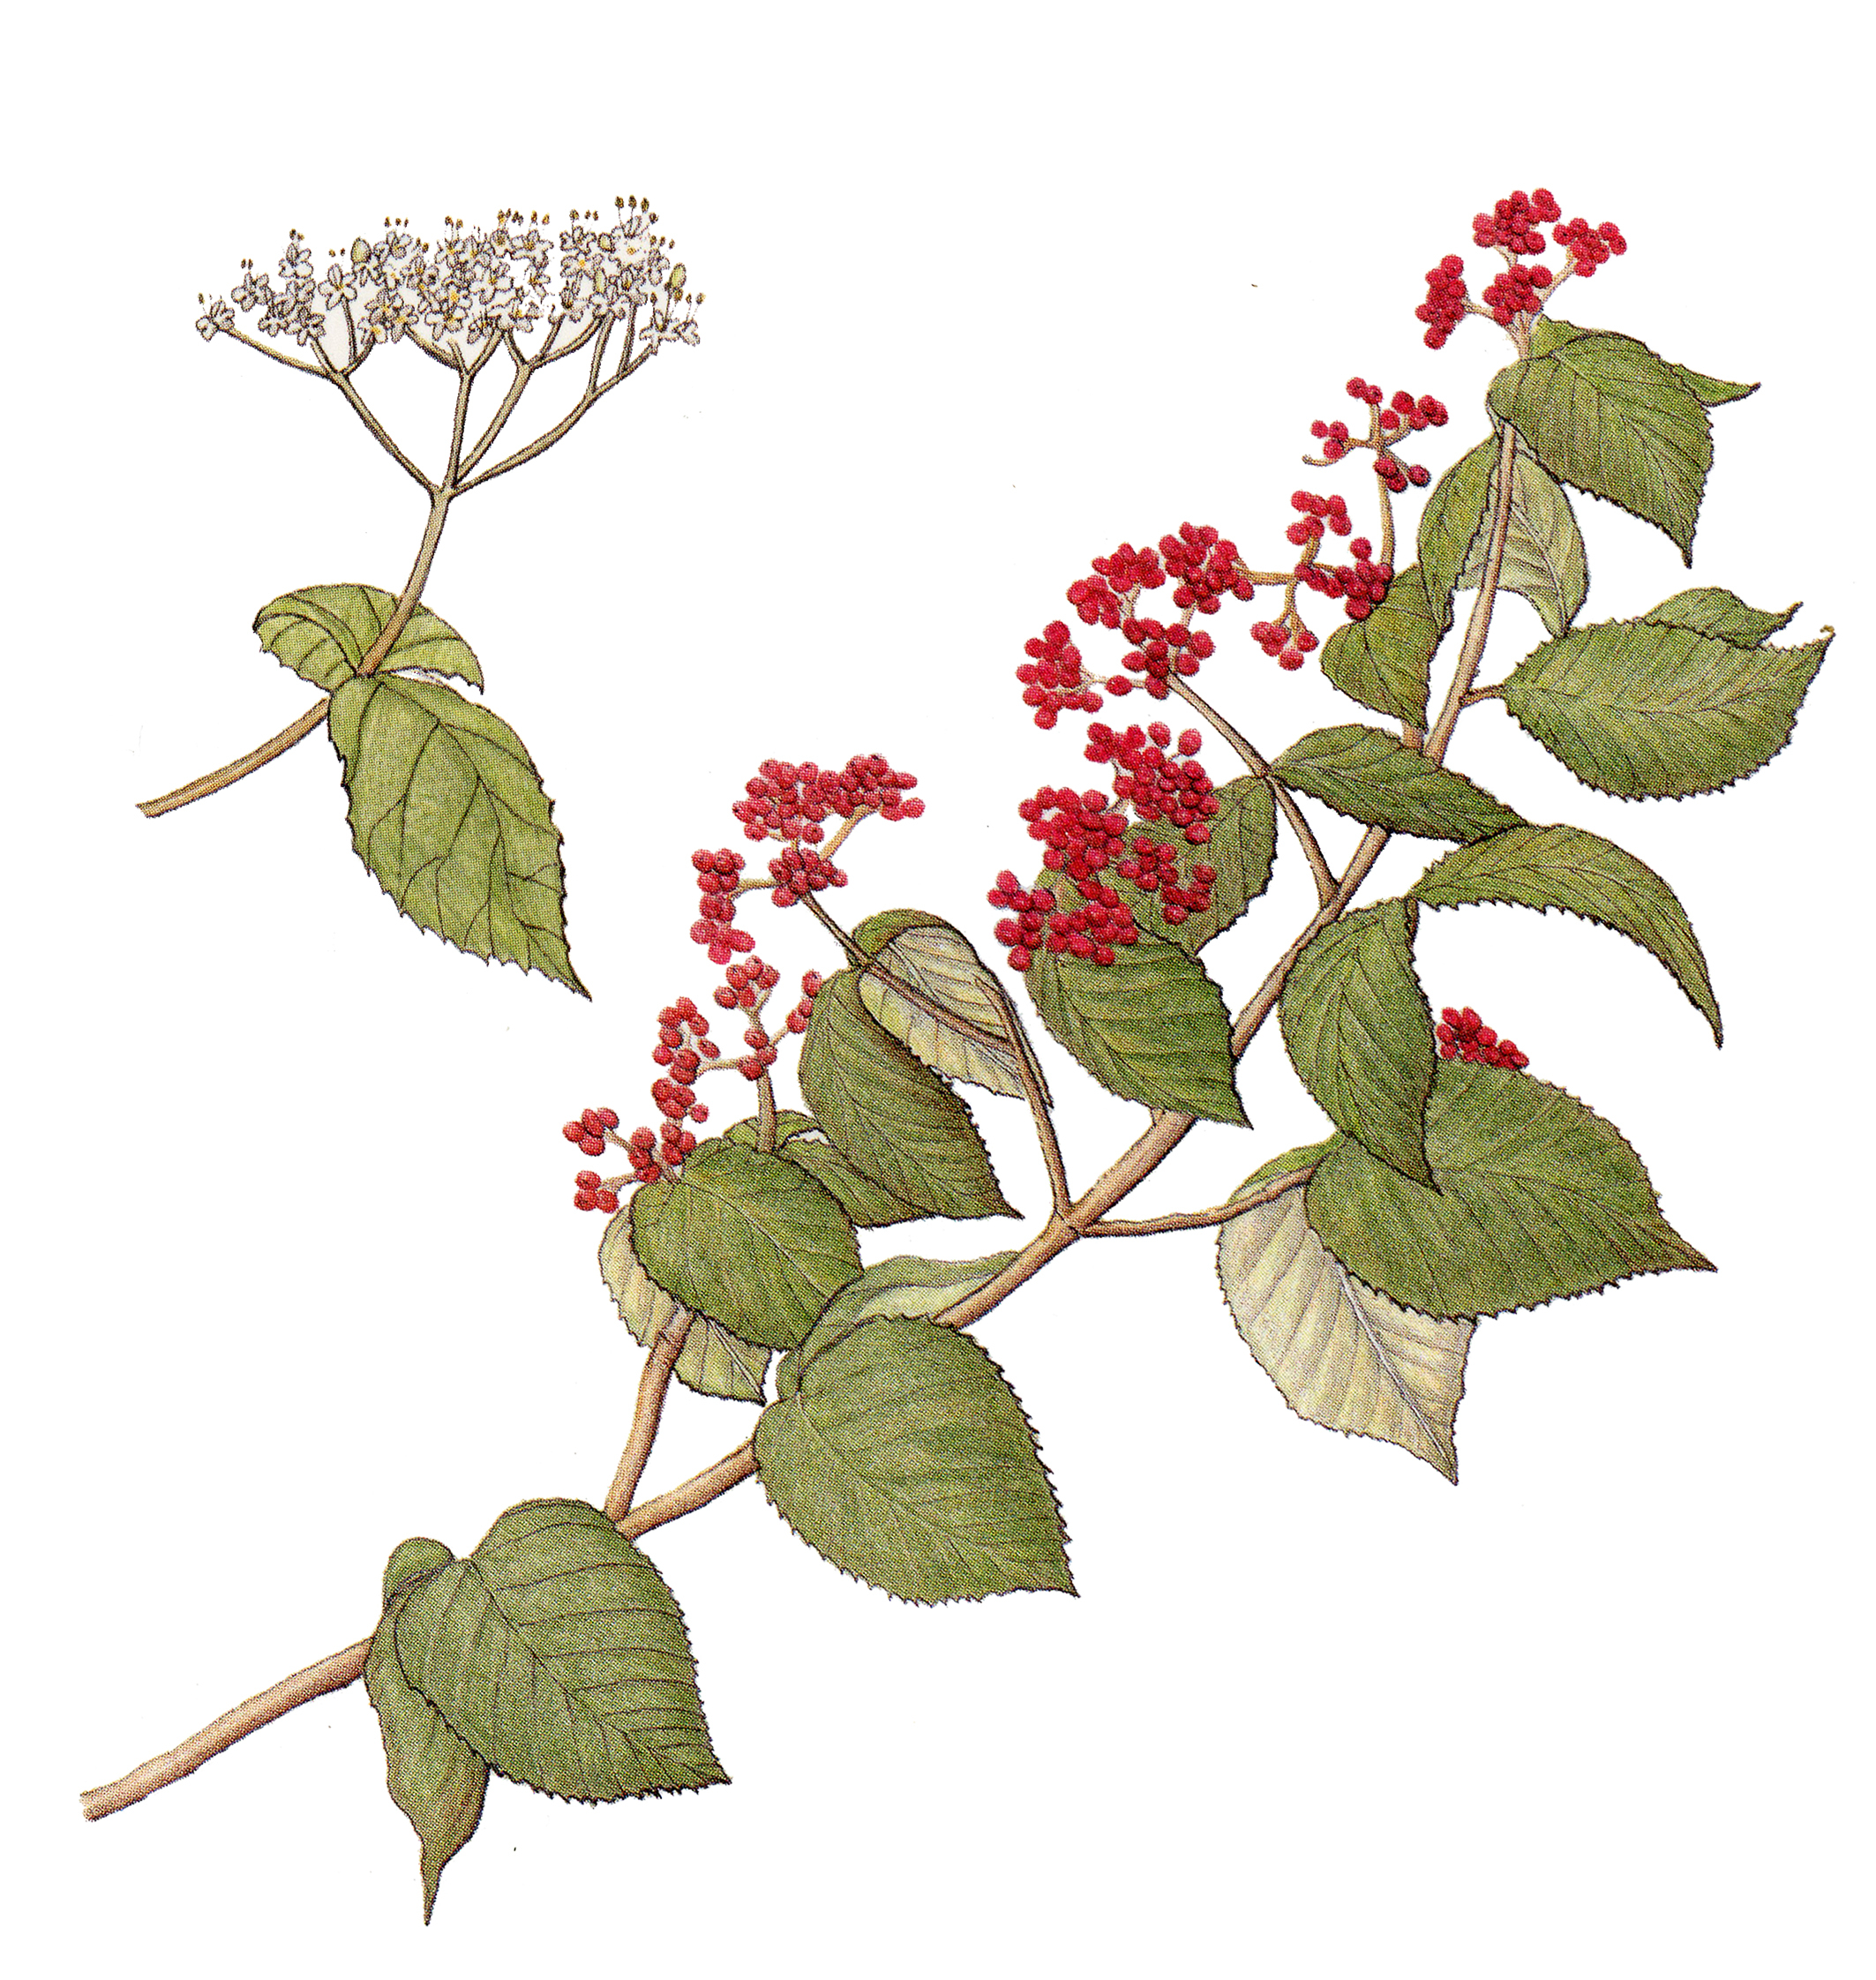 덜꿩나무의 속명 바이버넘(Viburnum)은 ‘묶다’란 뜻의 라틴어 비에르(viere)에서 비롯됐으며 이 속 식물들은 가지가 특별히 길고 유연한 특성이 있다.